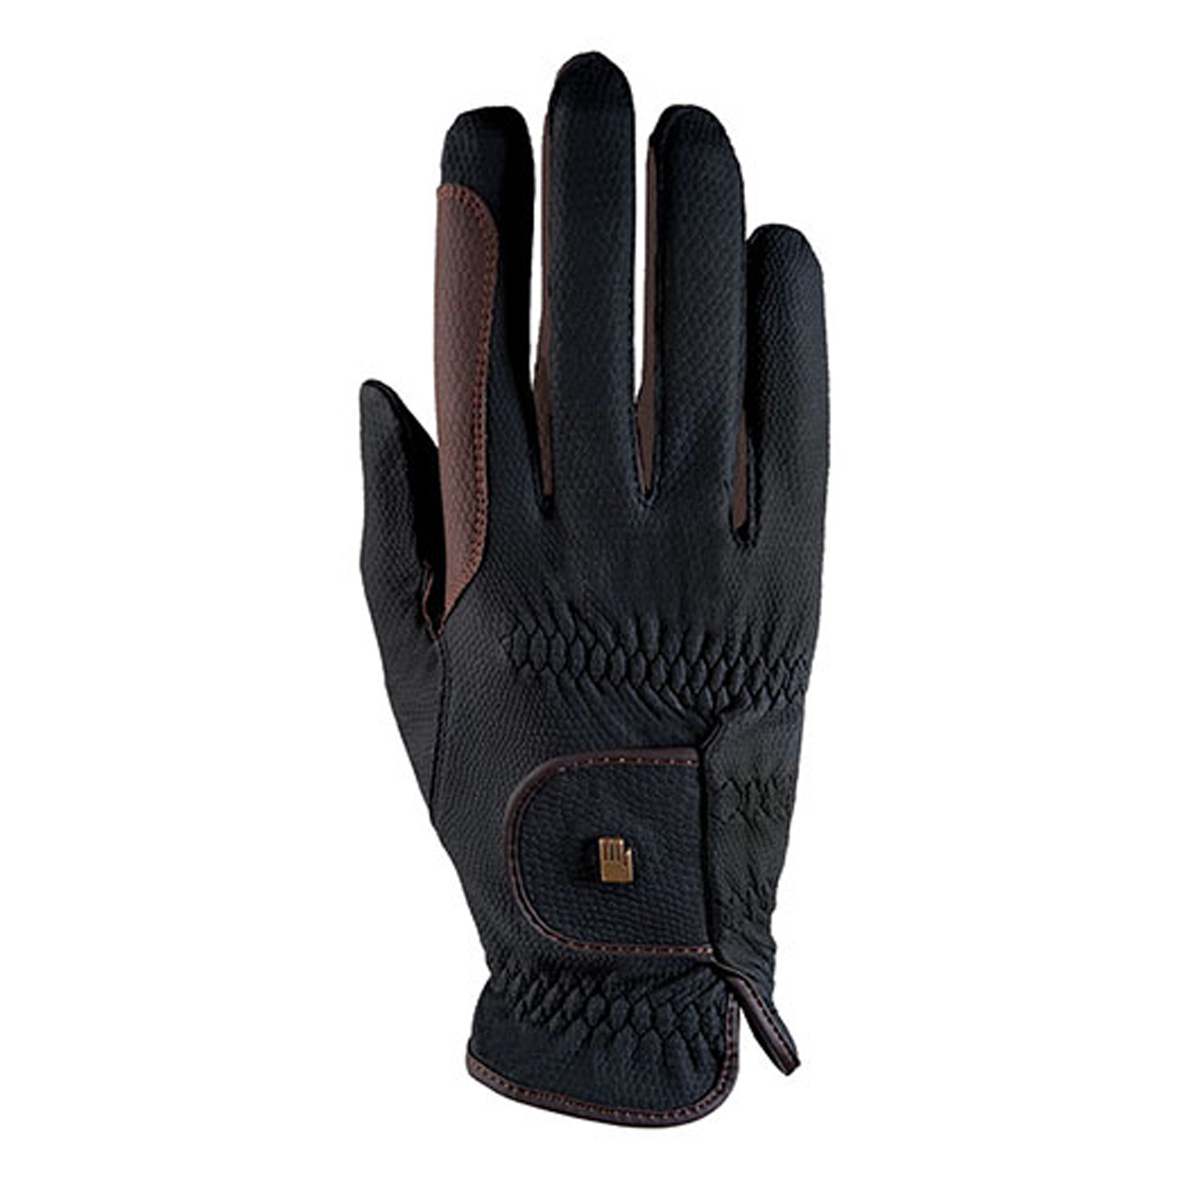 Handschoenen Roeckl Malta Bicolor Grip, 6 in black/brown